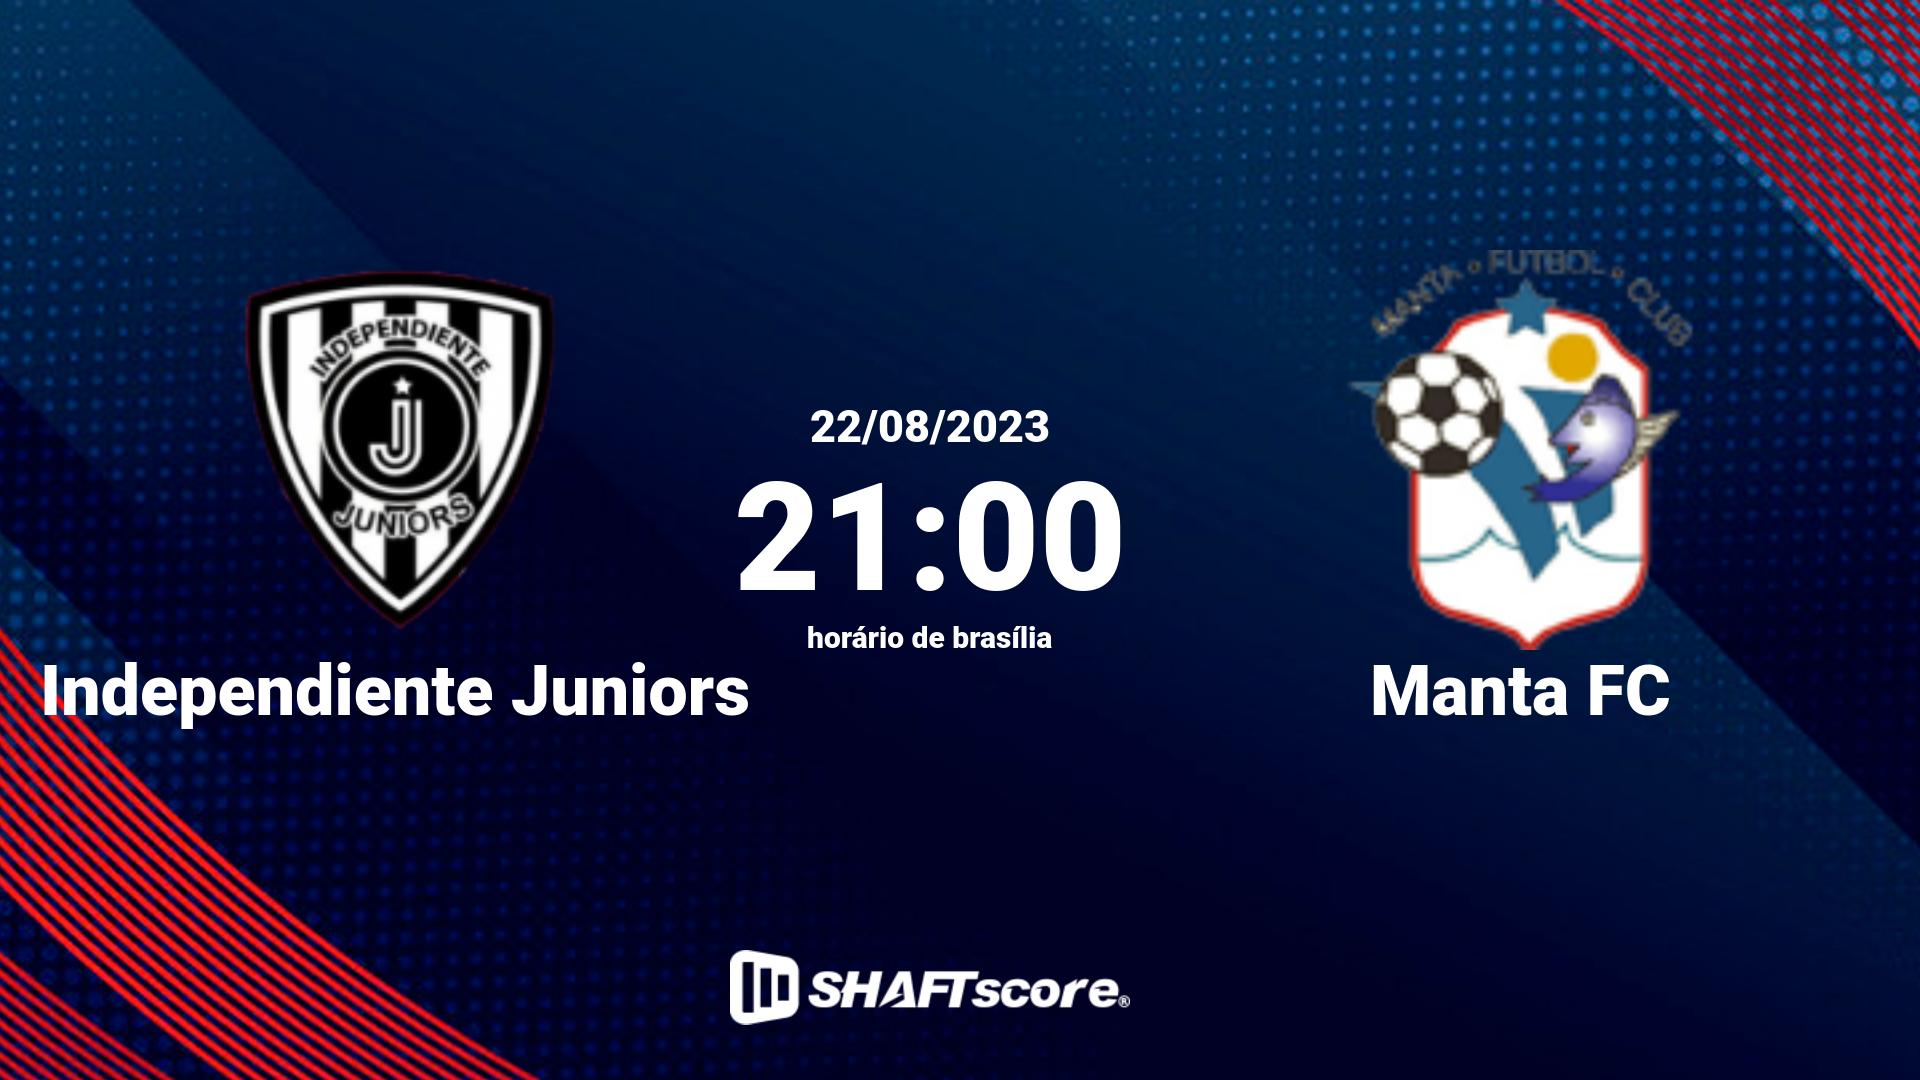 Estatísticas do jogo Independiente Juniors vs Manta FC 22.08 21:00